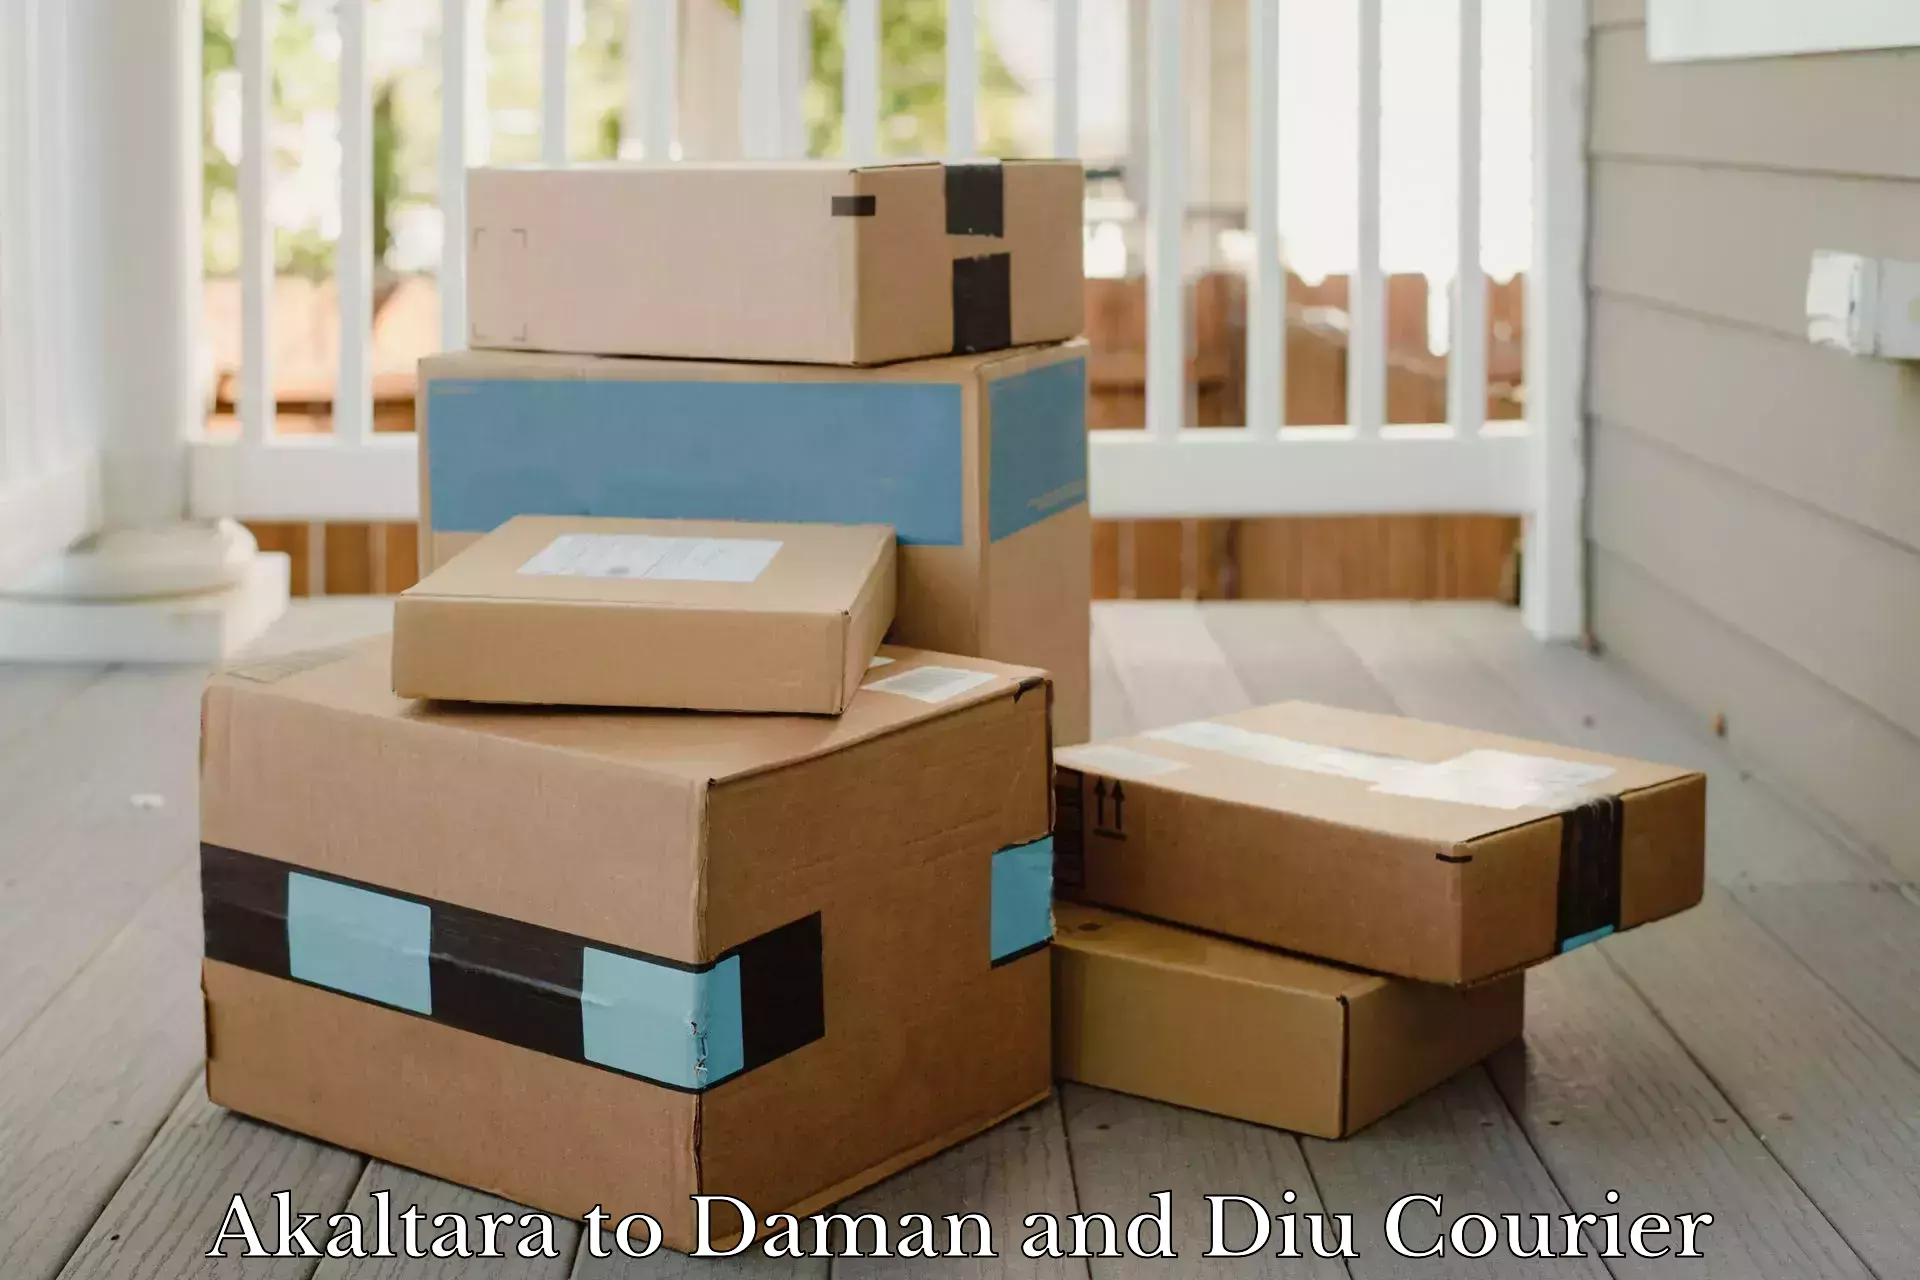 Bulk courier orders Akaltara to Daman and Diu